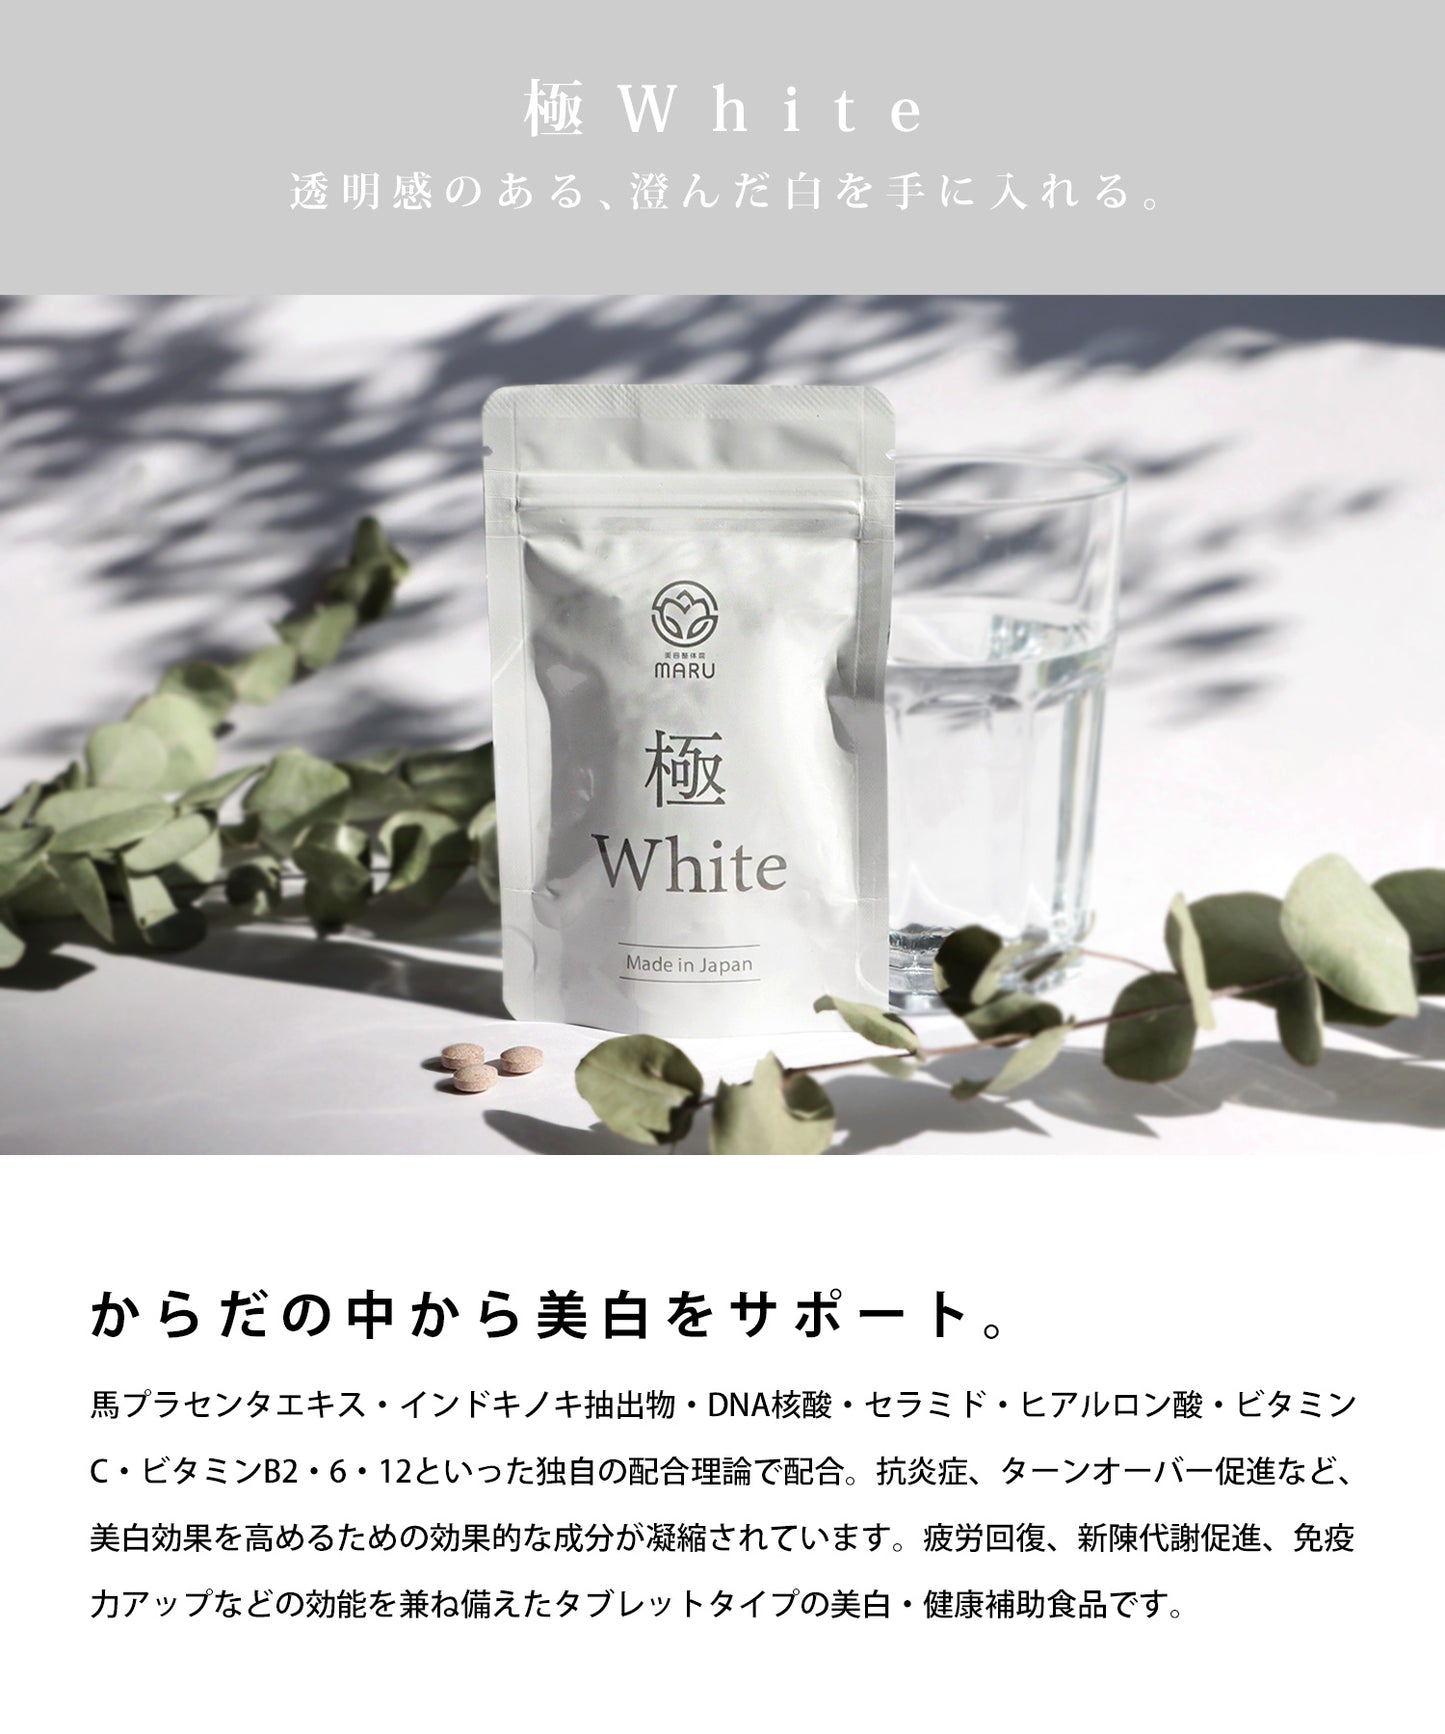 【極White】キワミホワイト